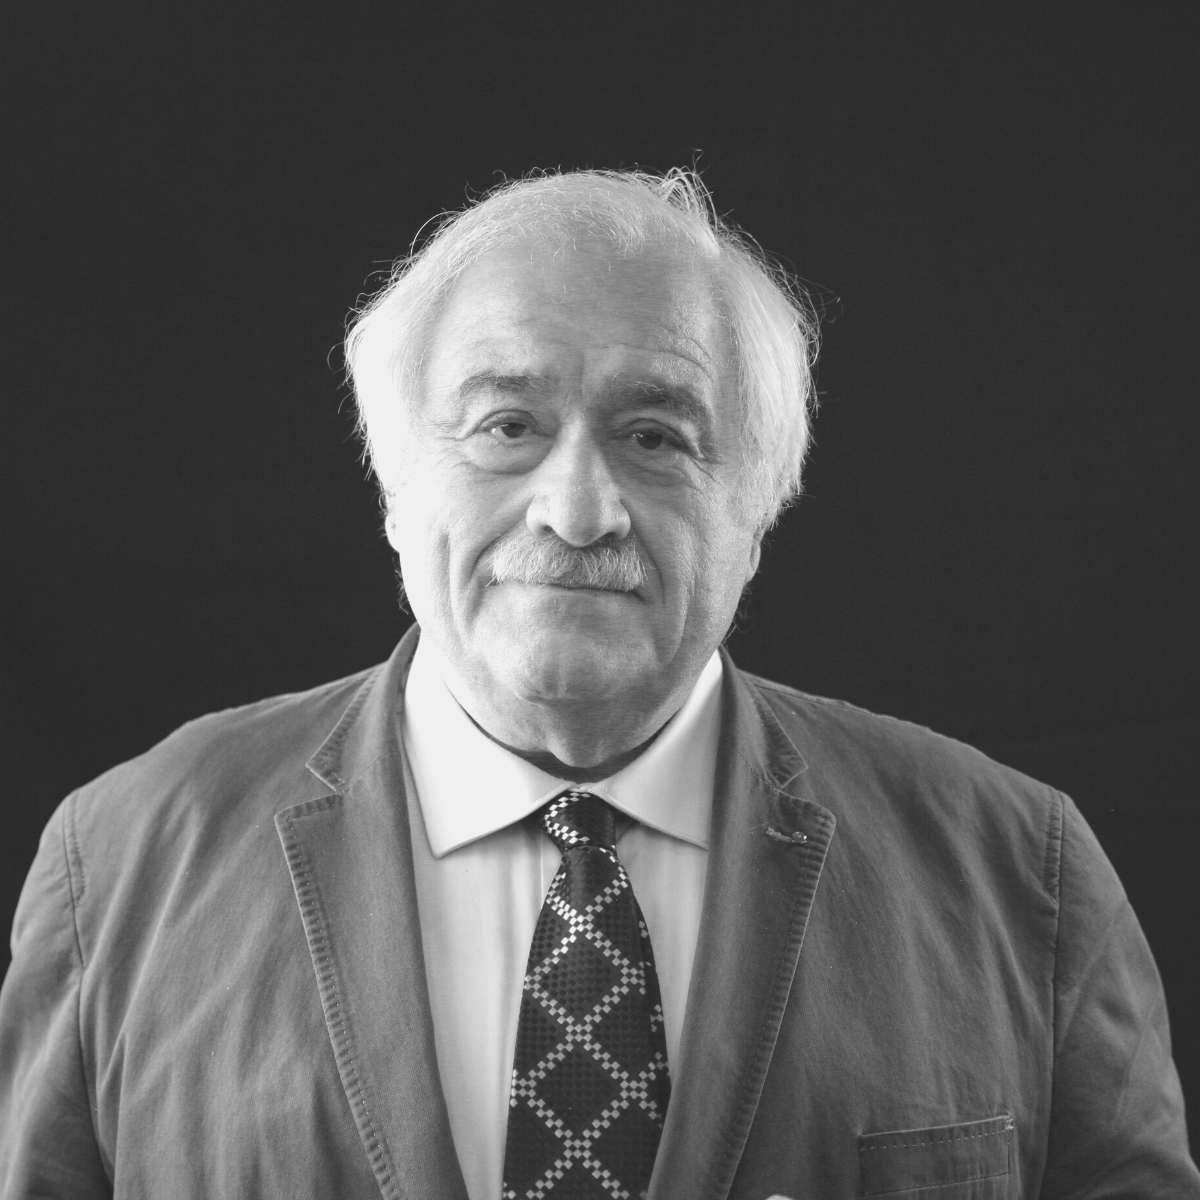 Speaker - Prof. Attilio Scienza